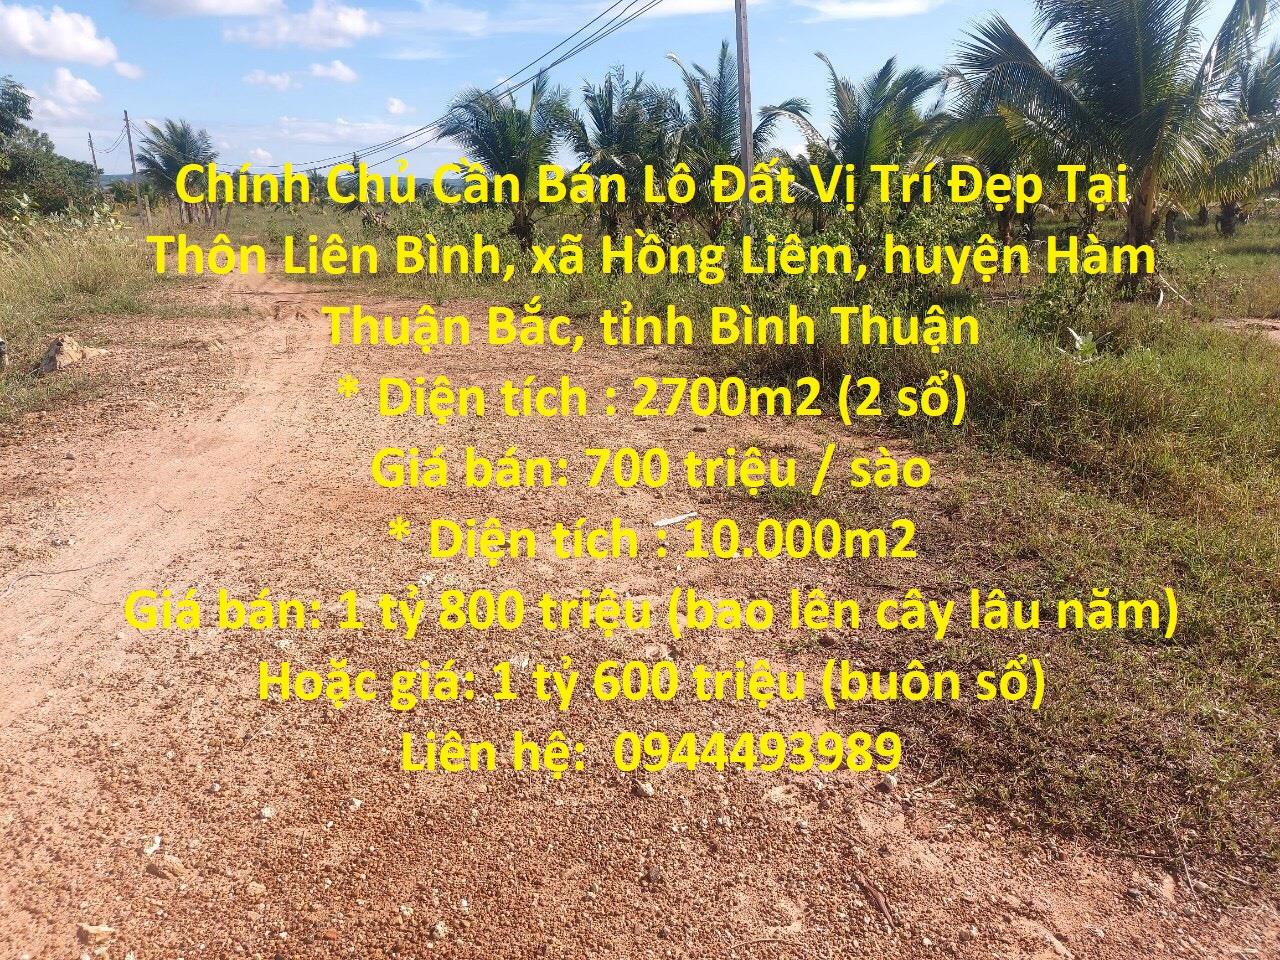 Chính Chủ Cần Bán Lô Đất Vị Trí Đẹp Tại Xã Hồng Liêm, Hàm Thuận Bắc